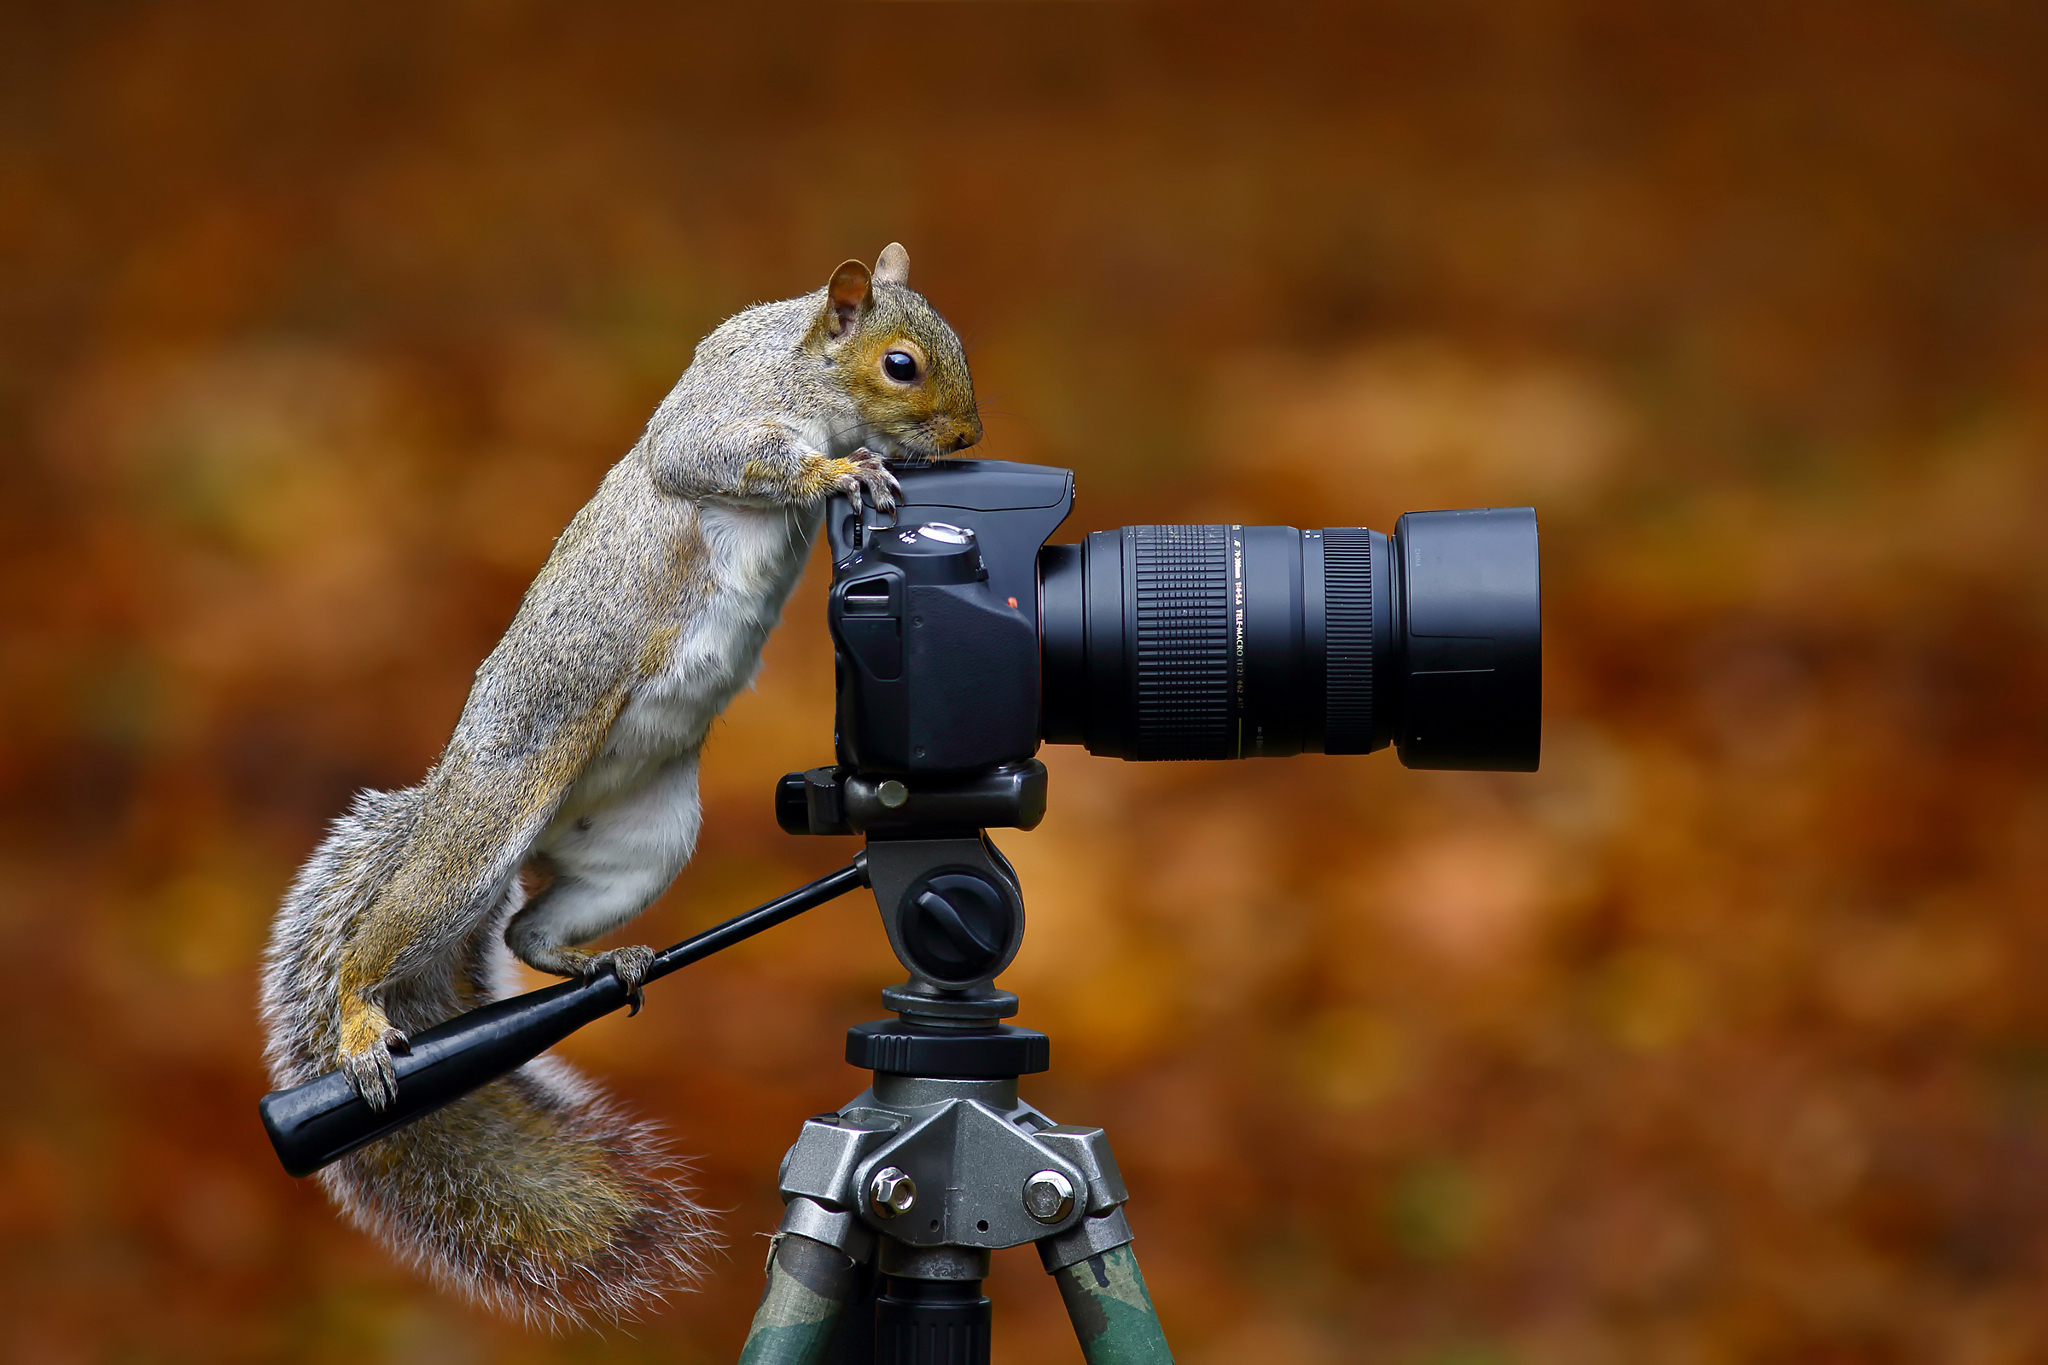 Immagine Divertenti Scoiattoli Macchina fotografica Wild Grey Squirrel Fotografo 2048x1365 divertente scoiattolo Fotocamera